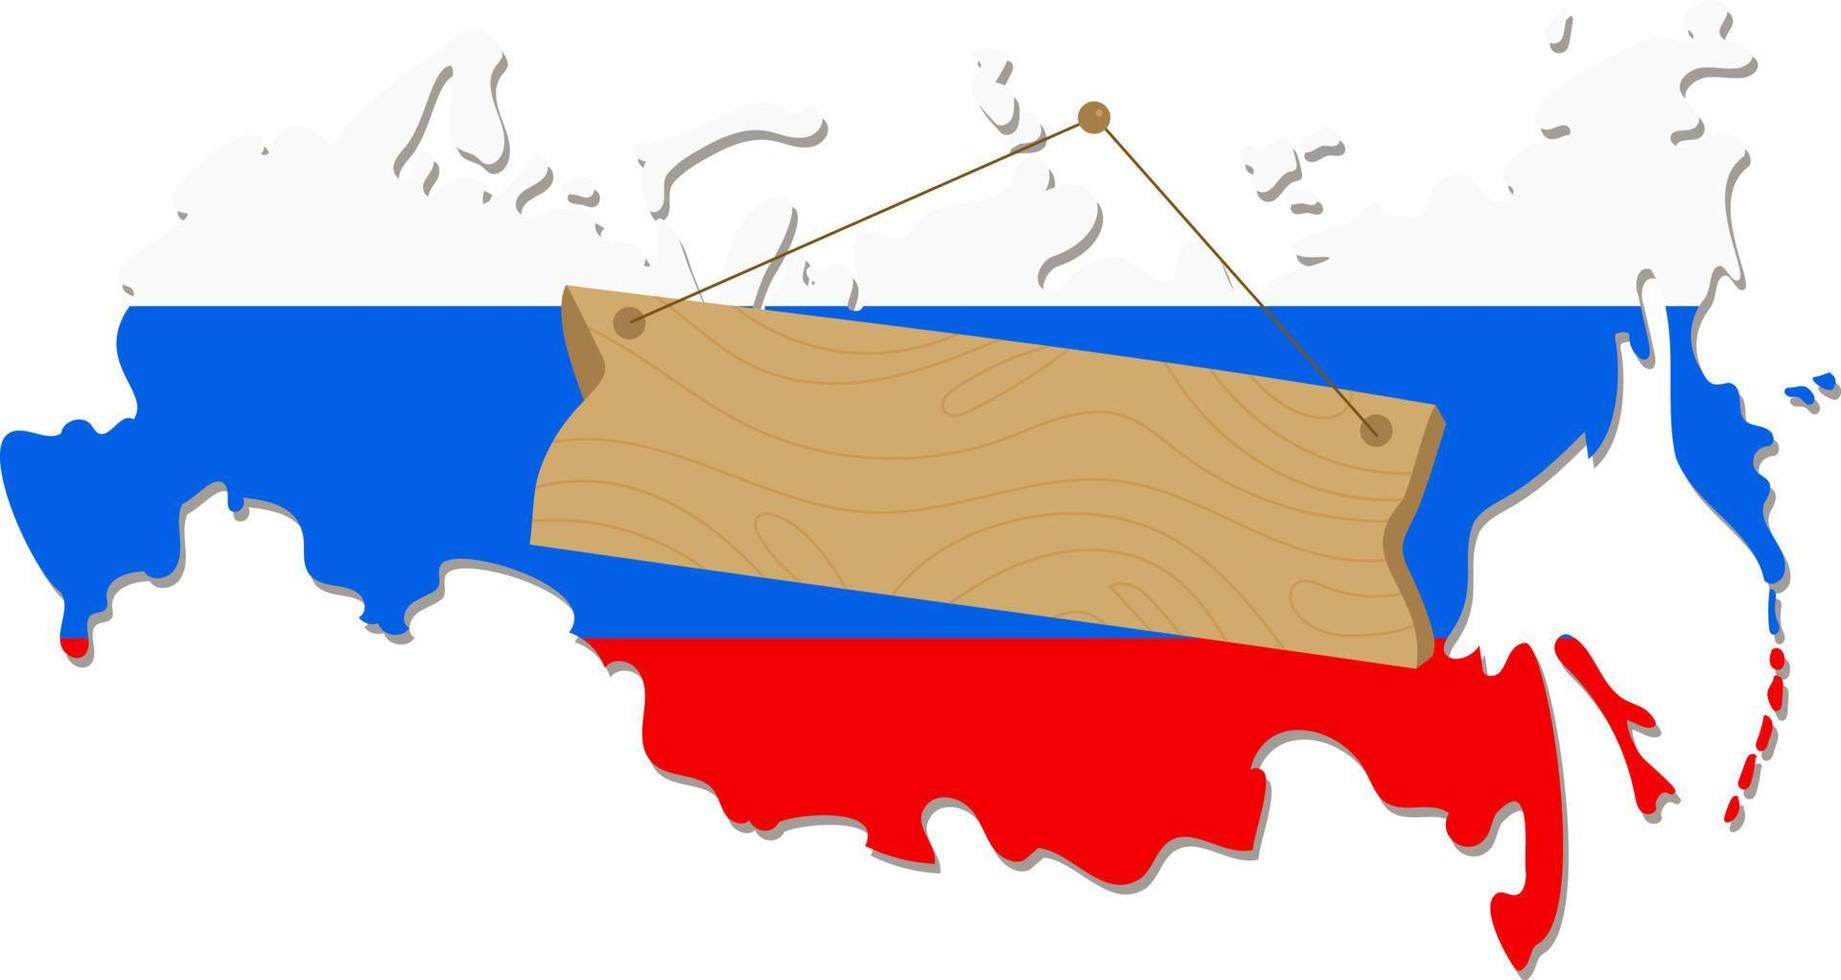 tavole incrociate di legno sulla mappa della russia vettore